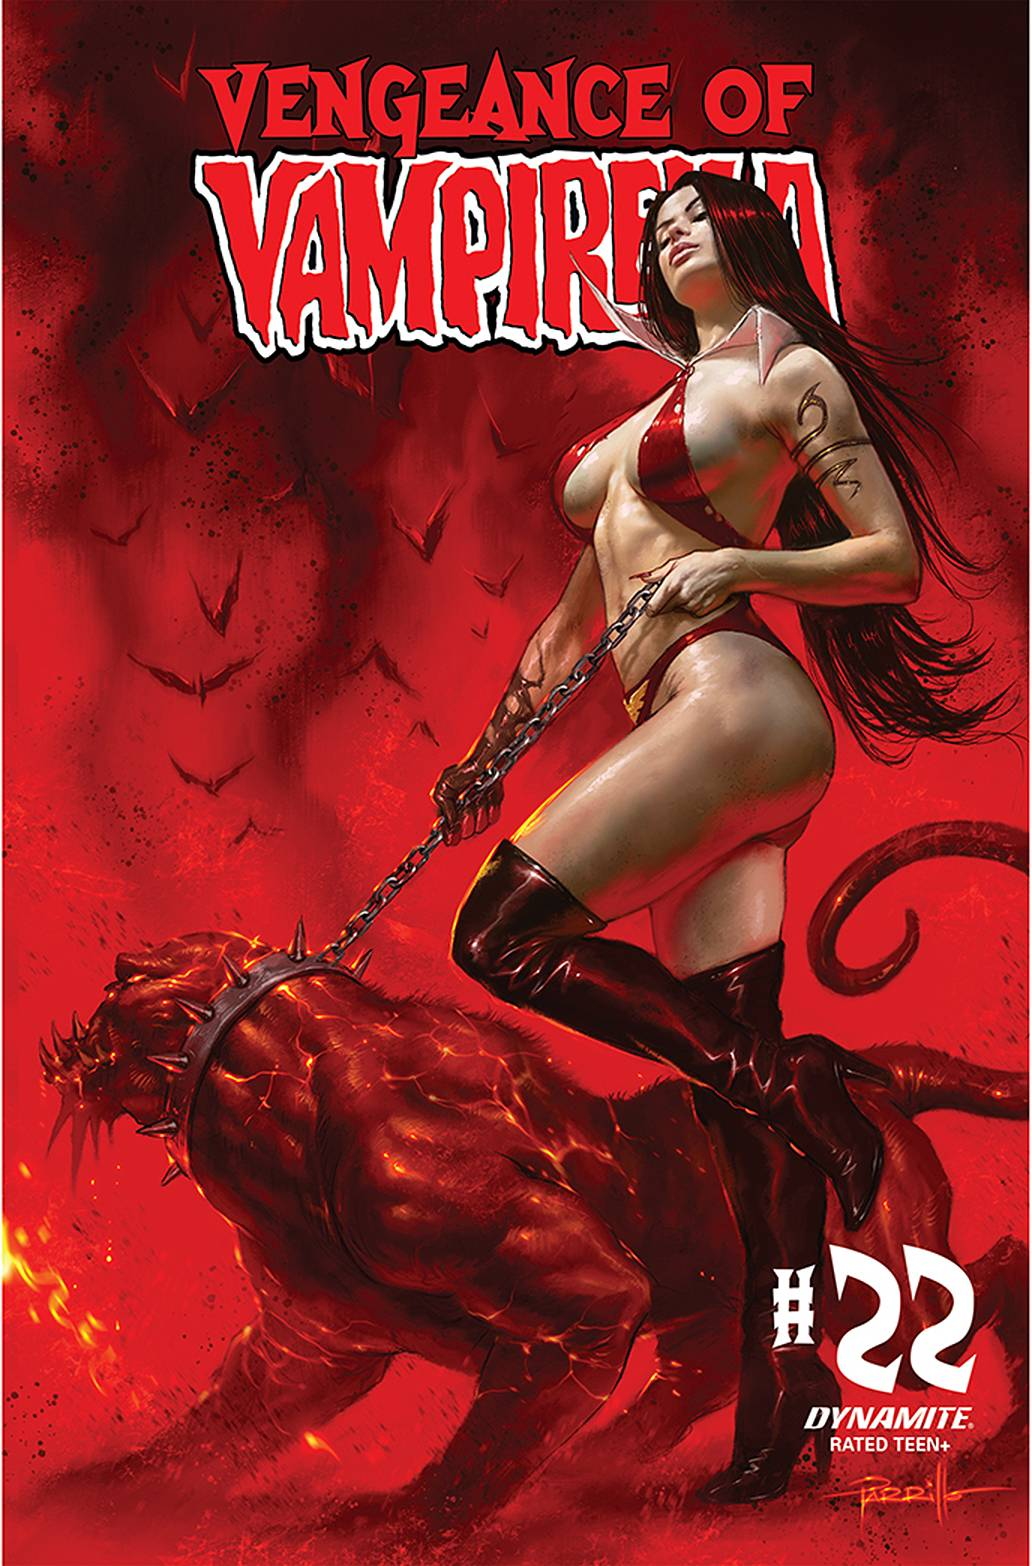 Vengeance of Vampirella no. 22 (2019) (Cover A)